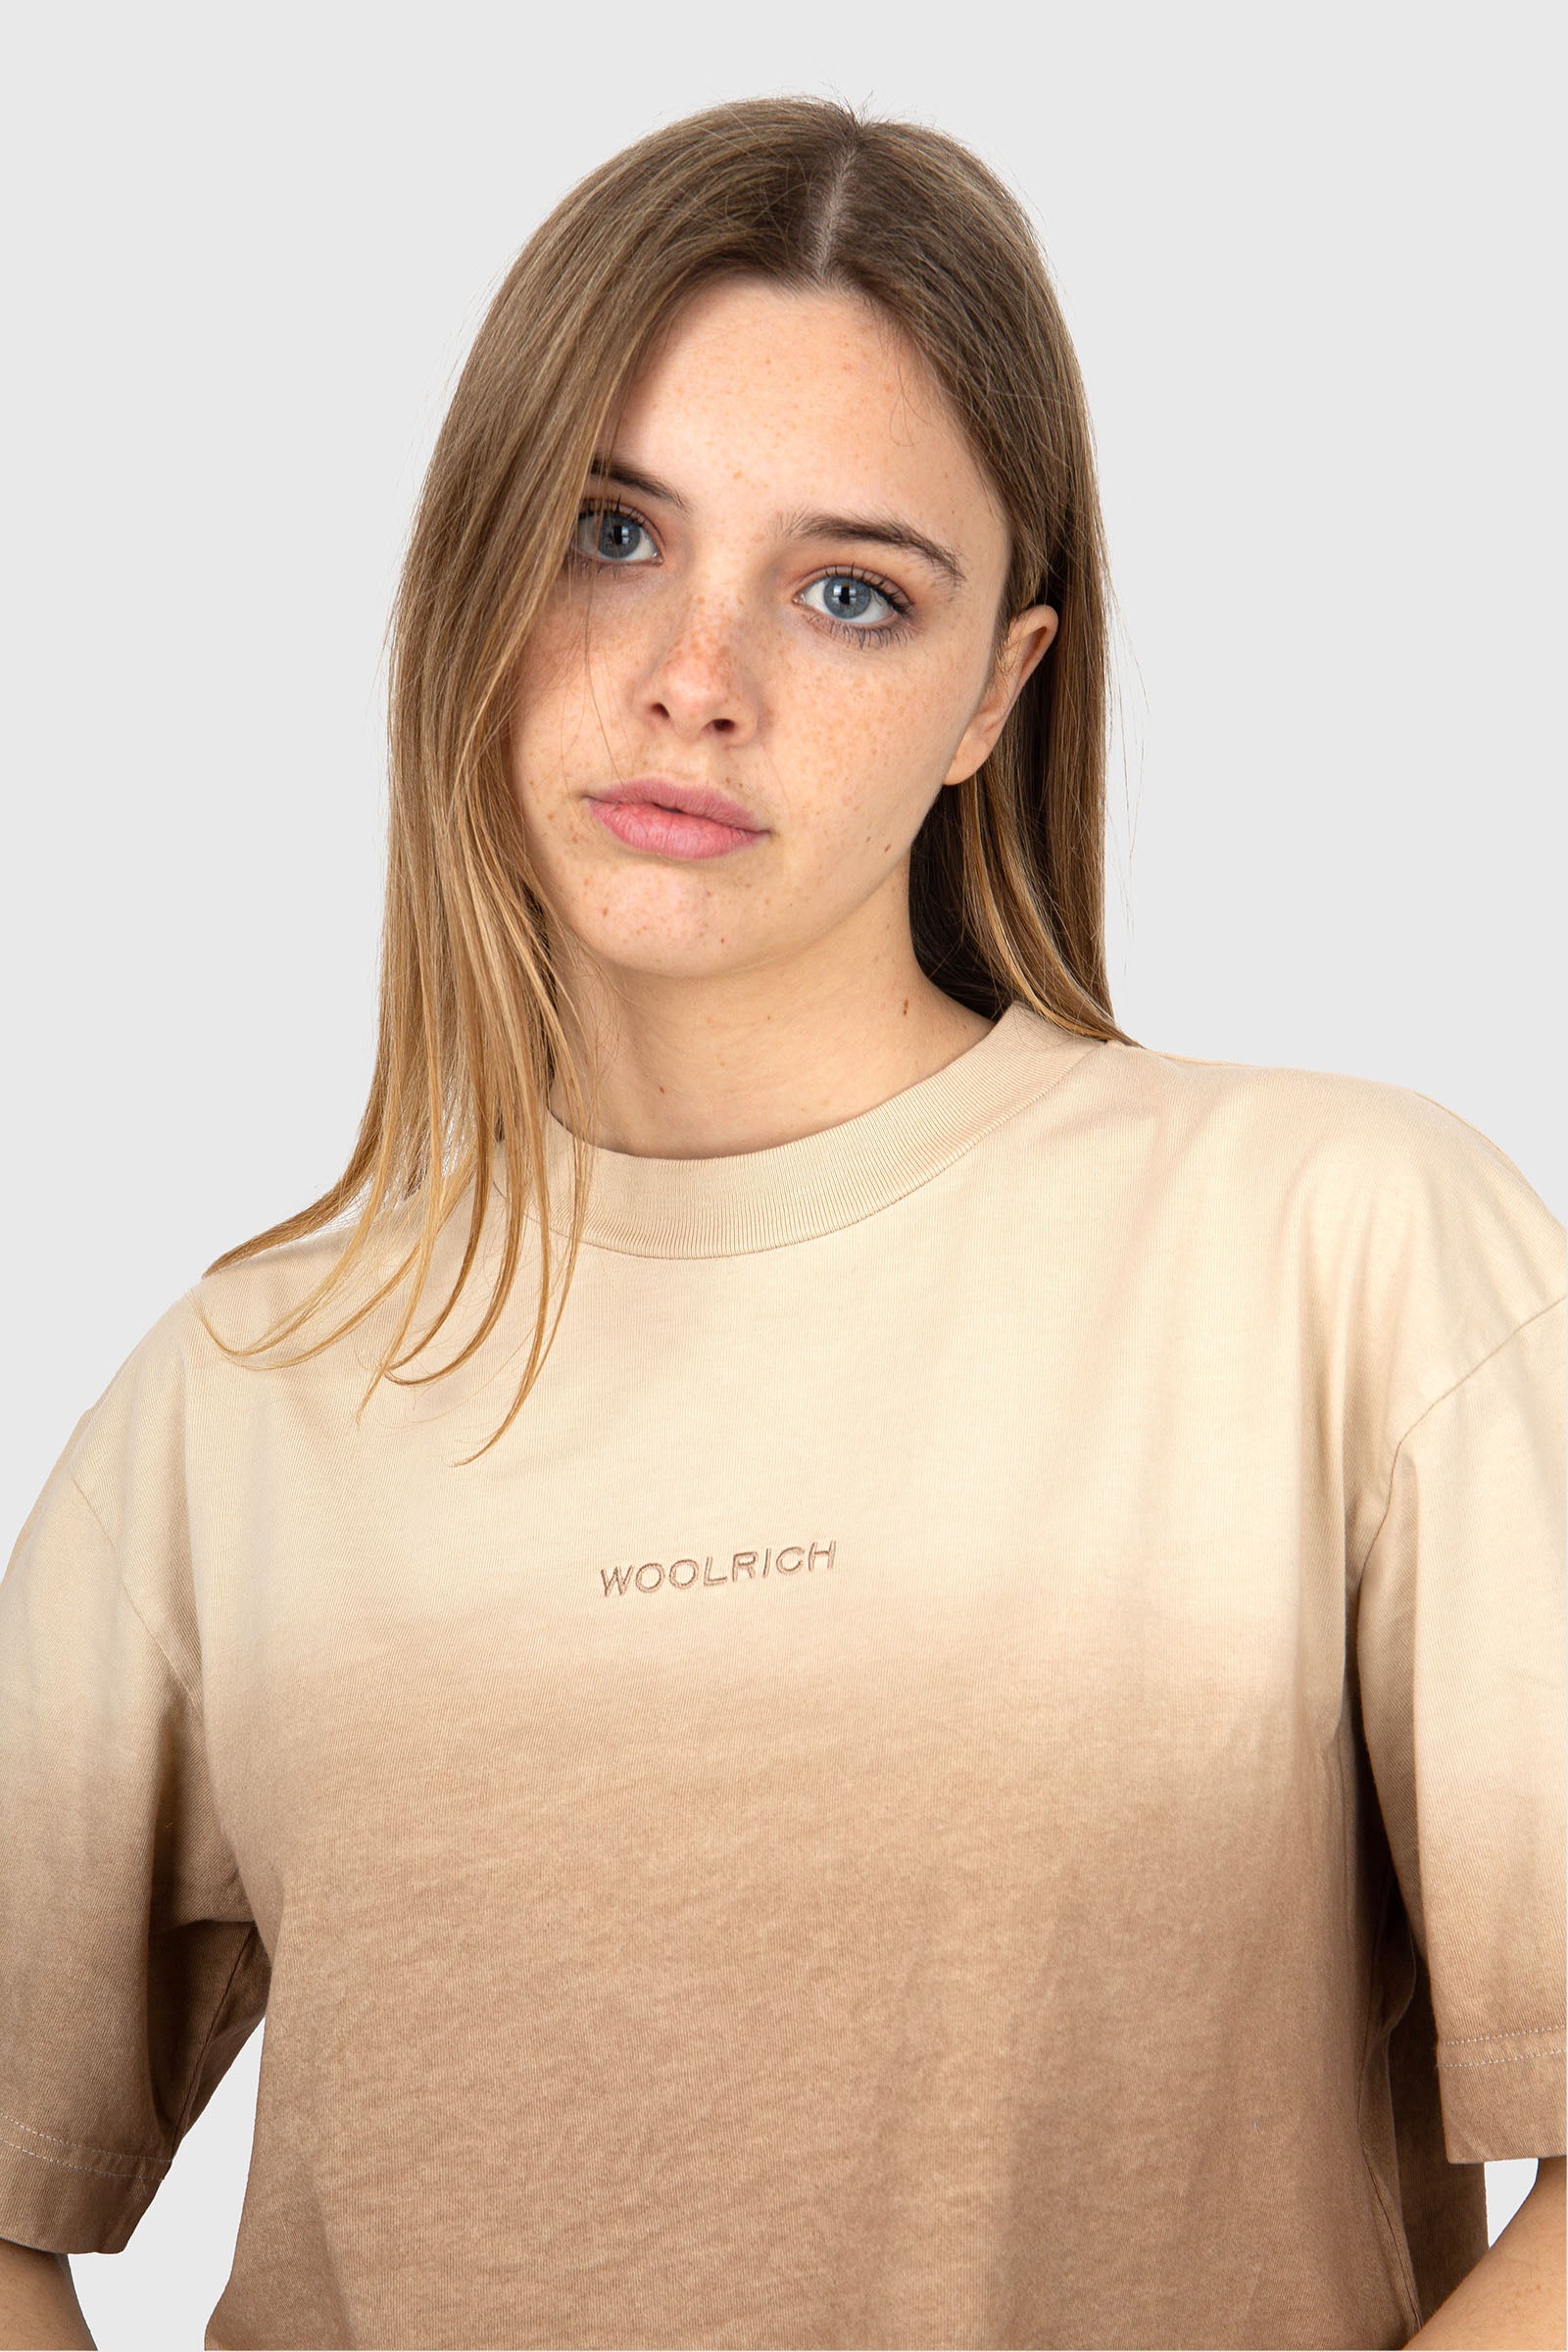 Woolrich T-Shirt Tye Dye Cotone Beige - 1